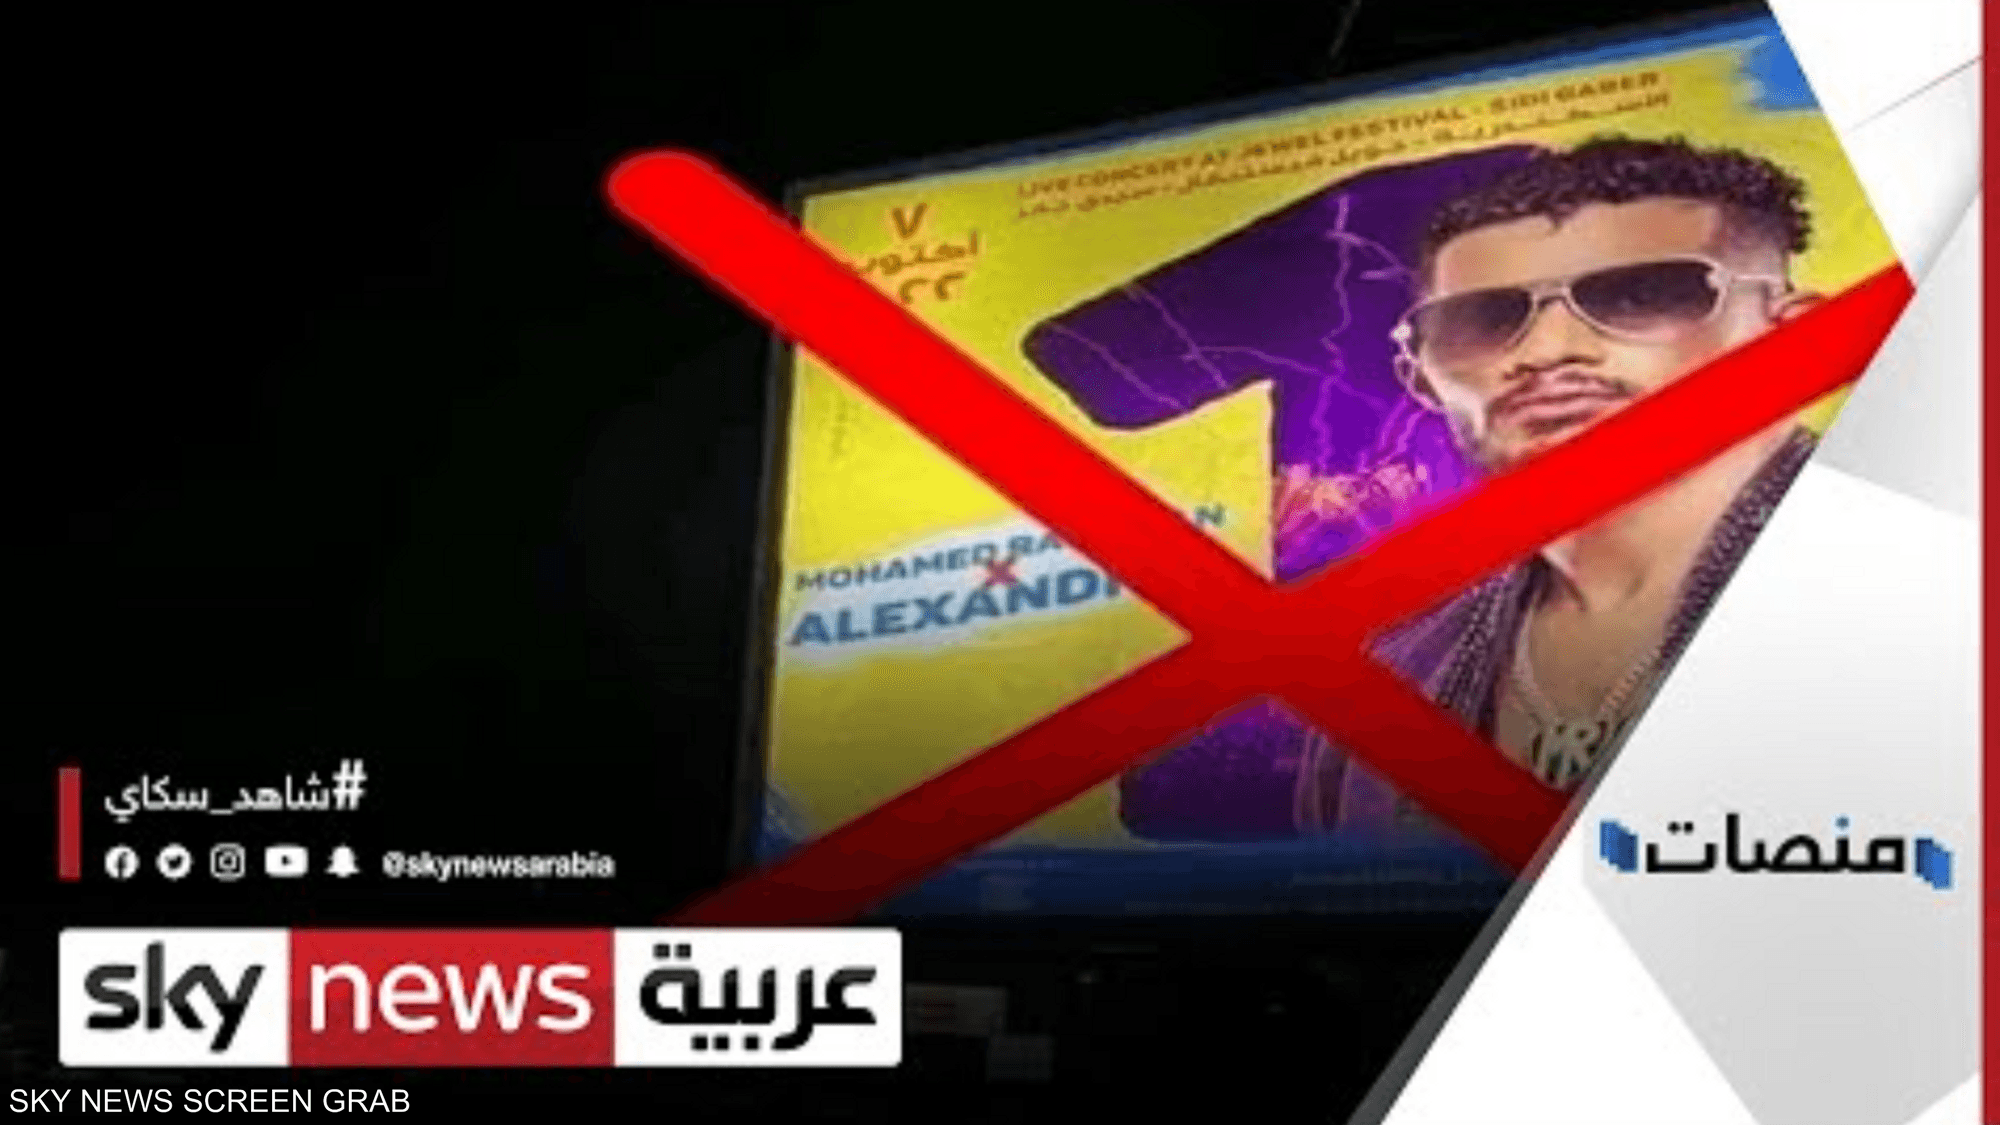 فيديو محرج لمحمد رمضان في الإسكندرية، والممثل يرد